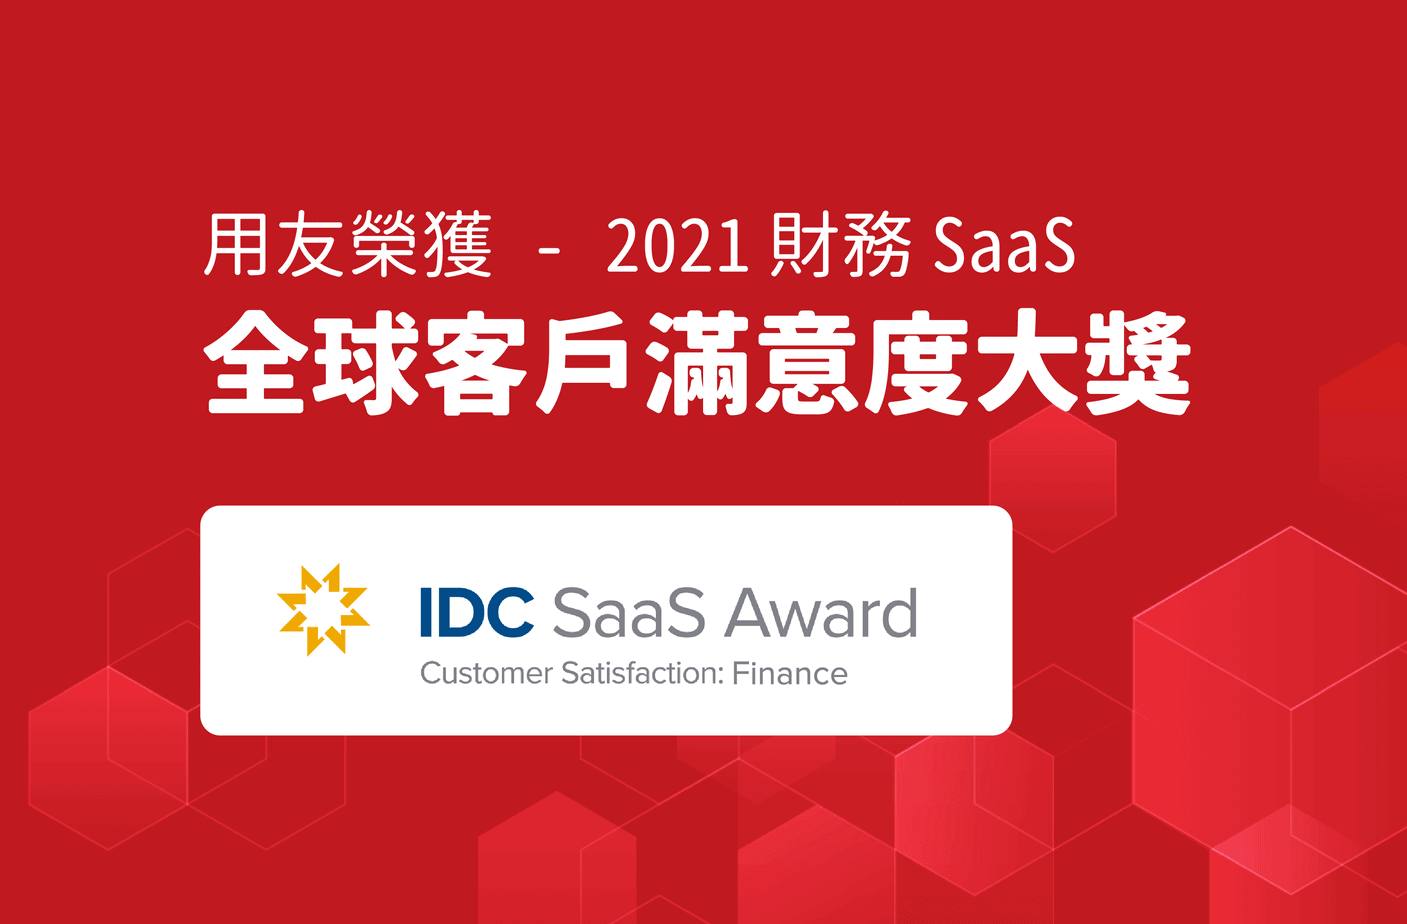 用友榮獲 IDC 2021 財務 SaaS 全球滿意度大獎